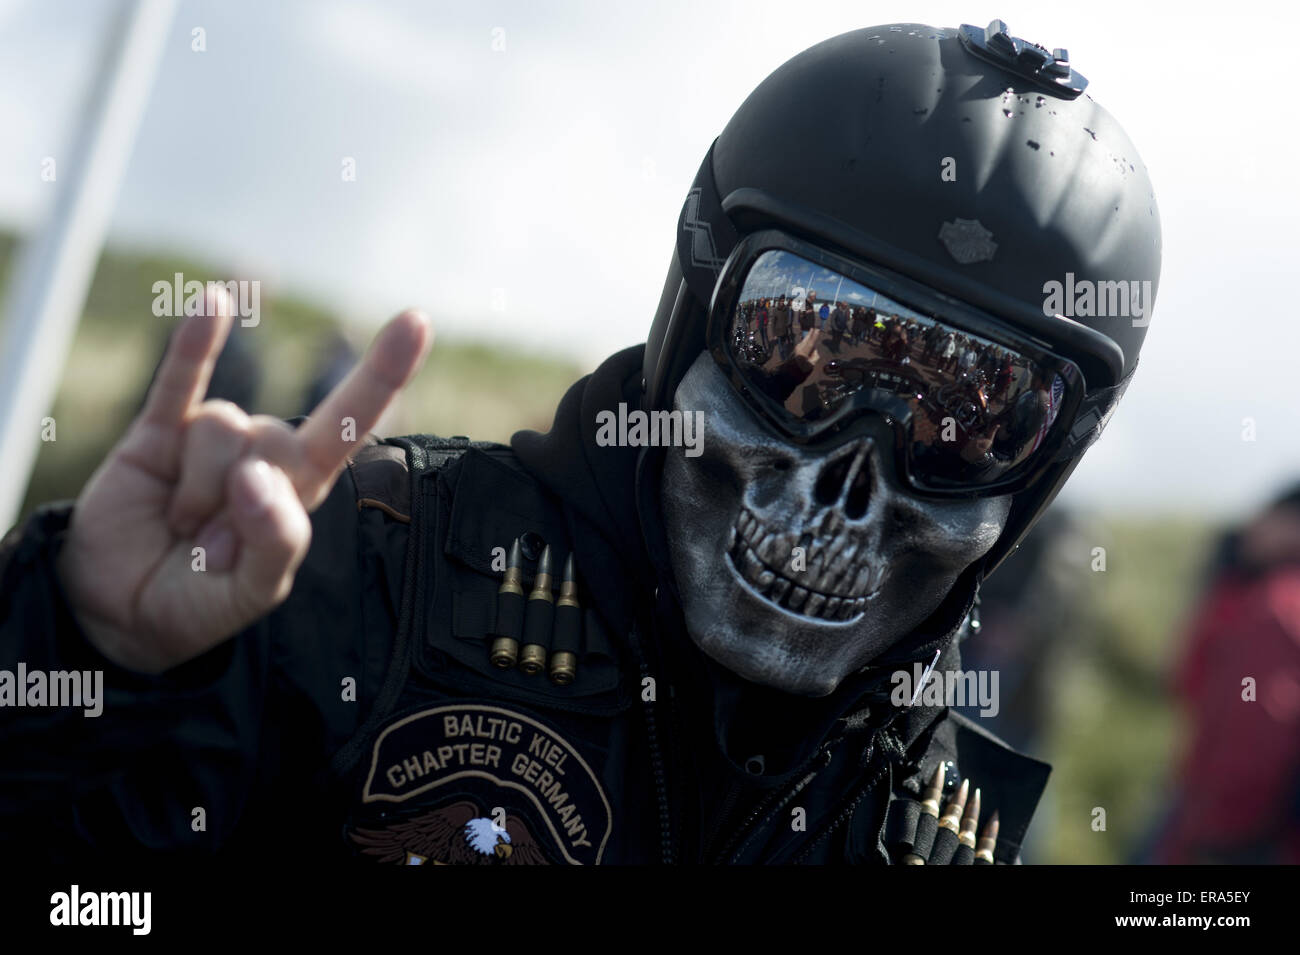 Sylt, Germania. Il 30 maggio 2015. Stefan, partecipanti a una riunione di  Harley-Davidson, indossa una maschera come egli si pone sull'isola di Sylt,  Germania, 30 maggio 2015. Più di 500 motociclisti si